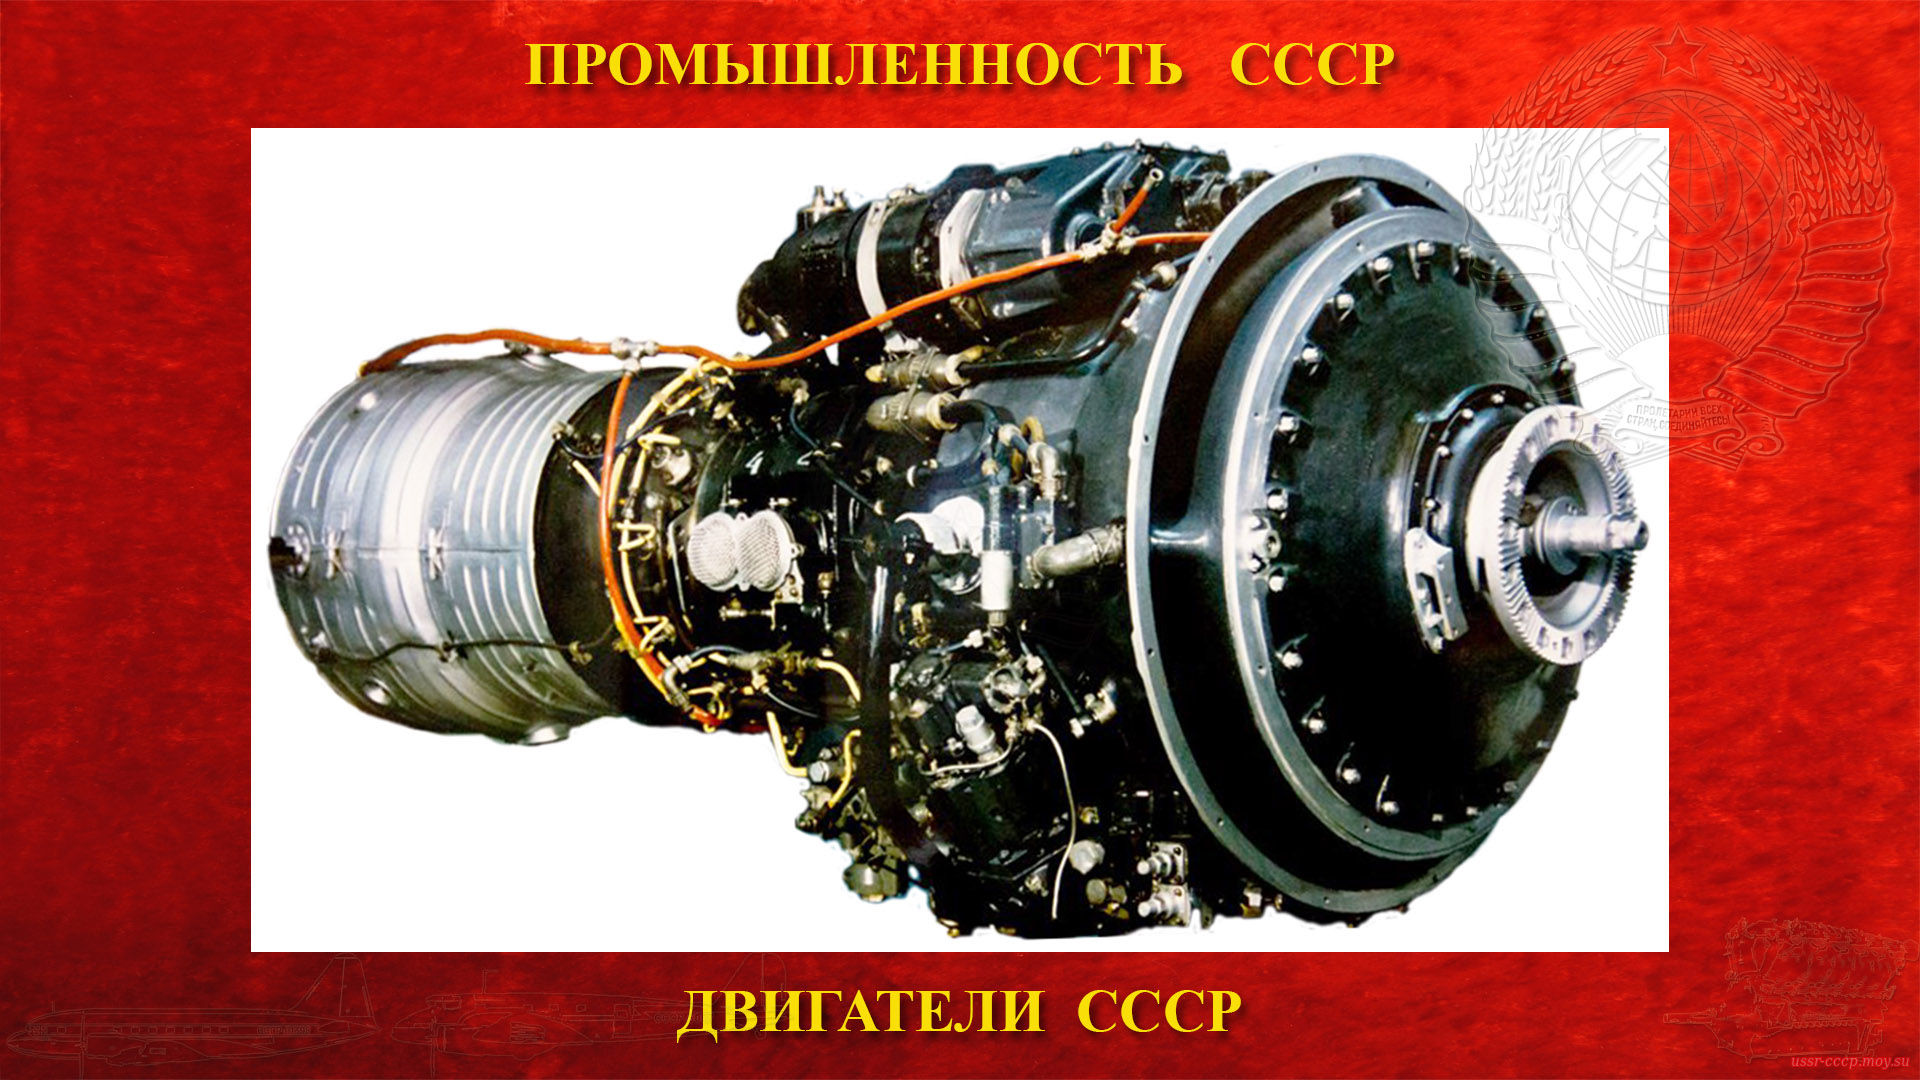 НК-4 — Советский авиационный турбовинтовой двигатель СССР